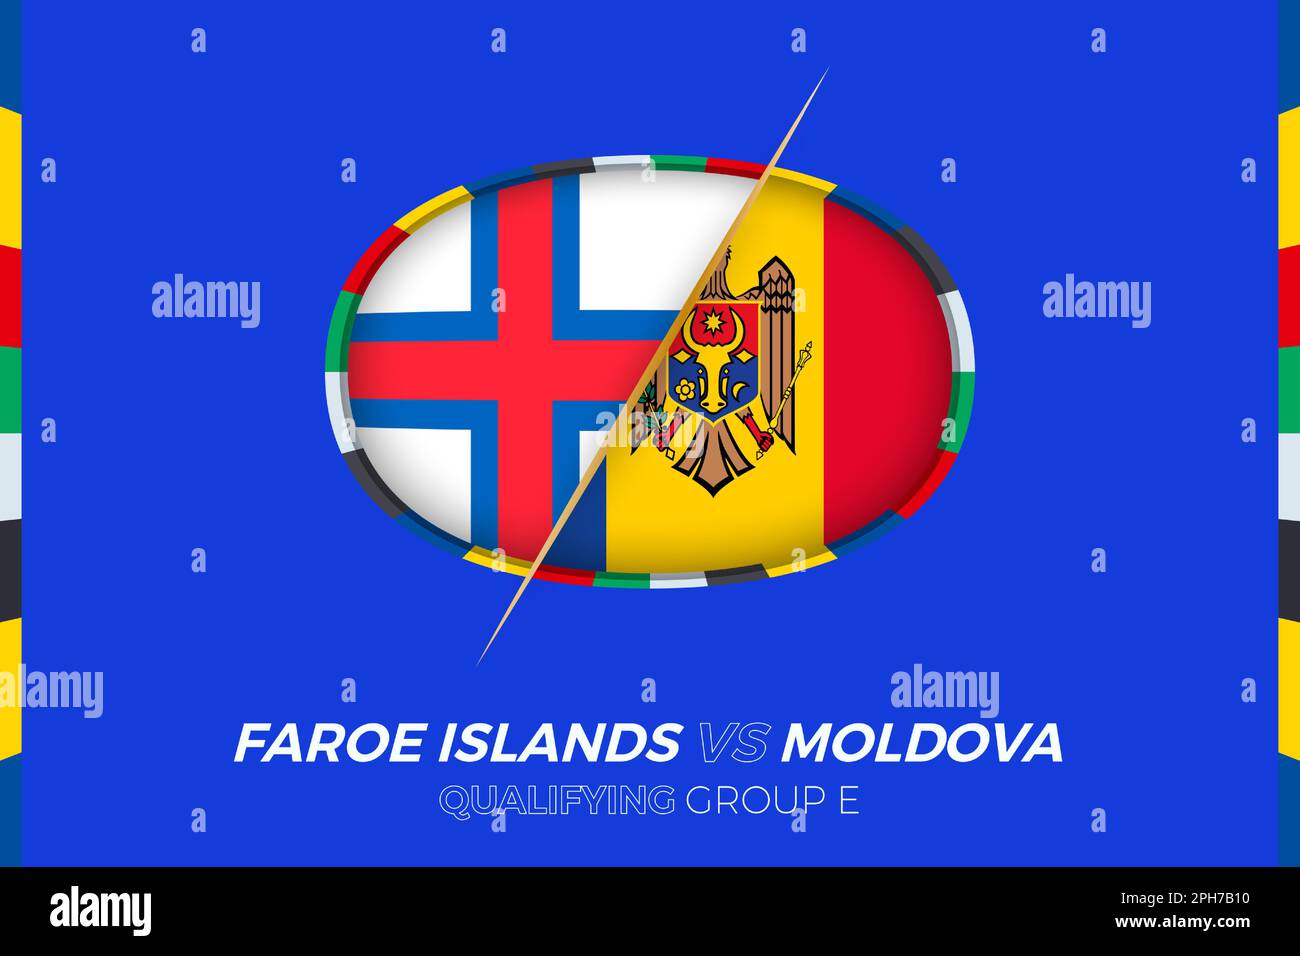 Islas feroe - moldavia